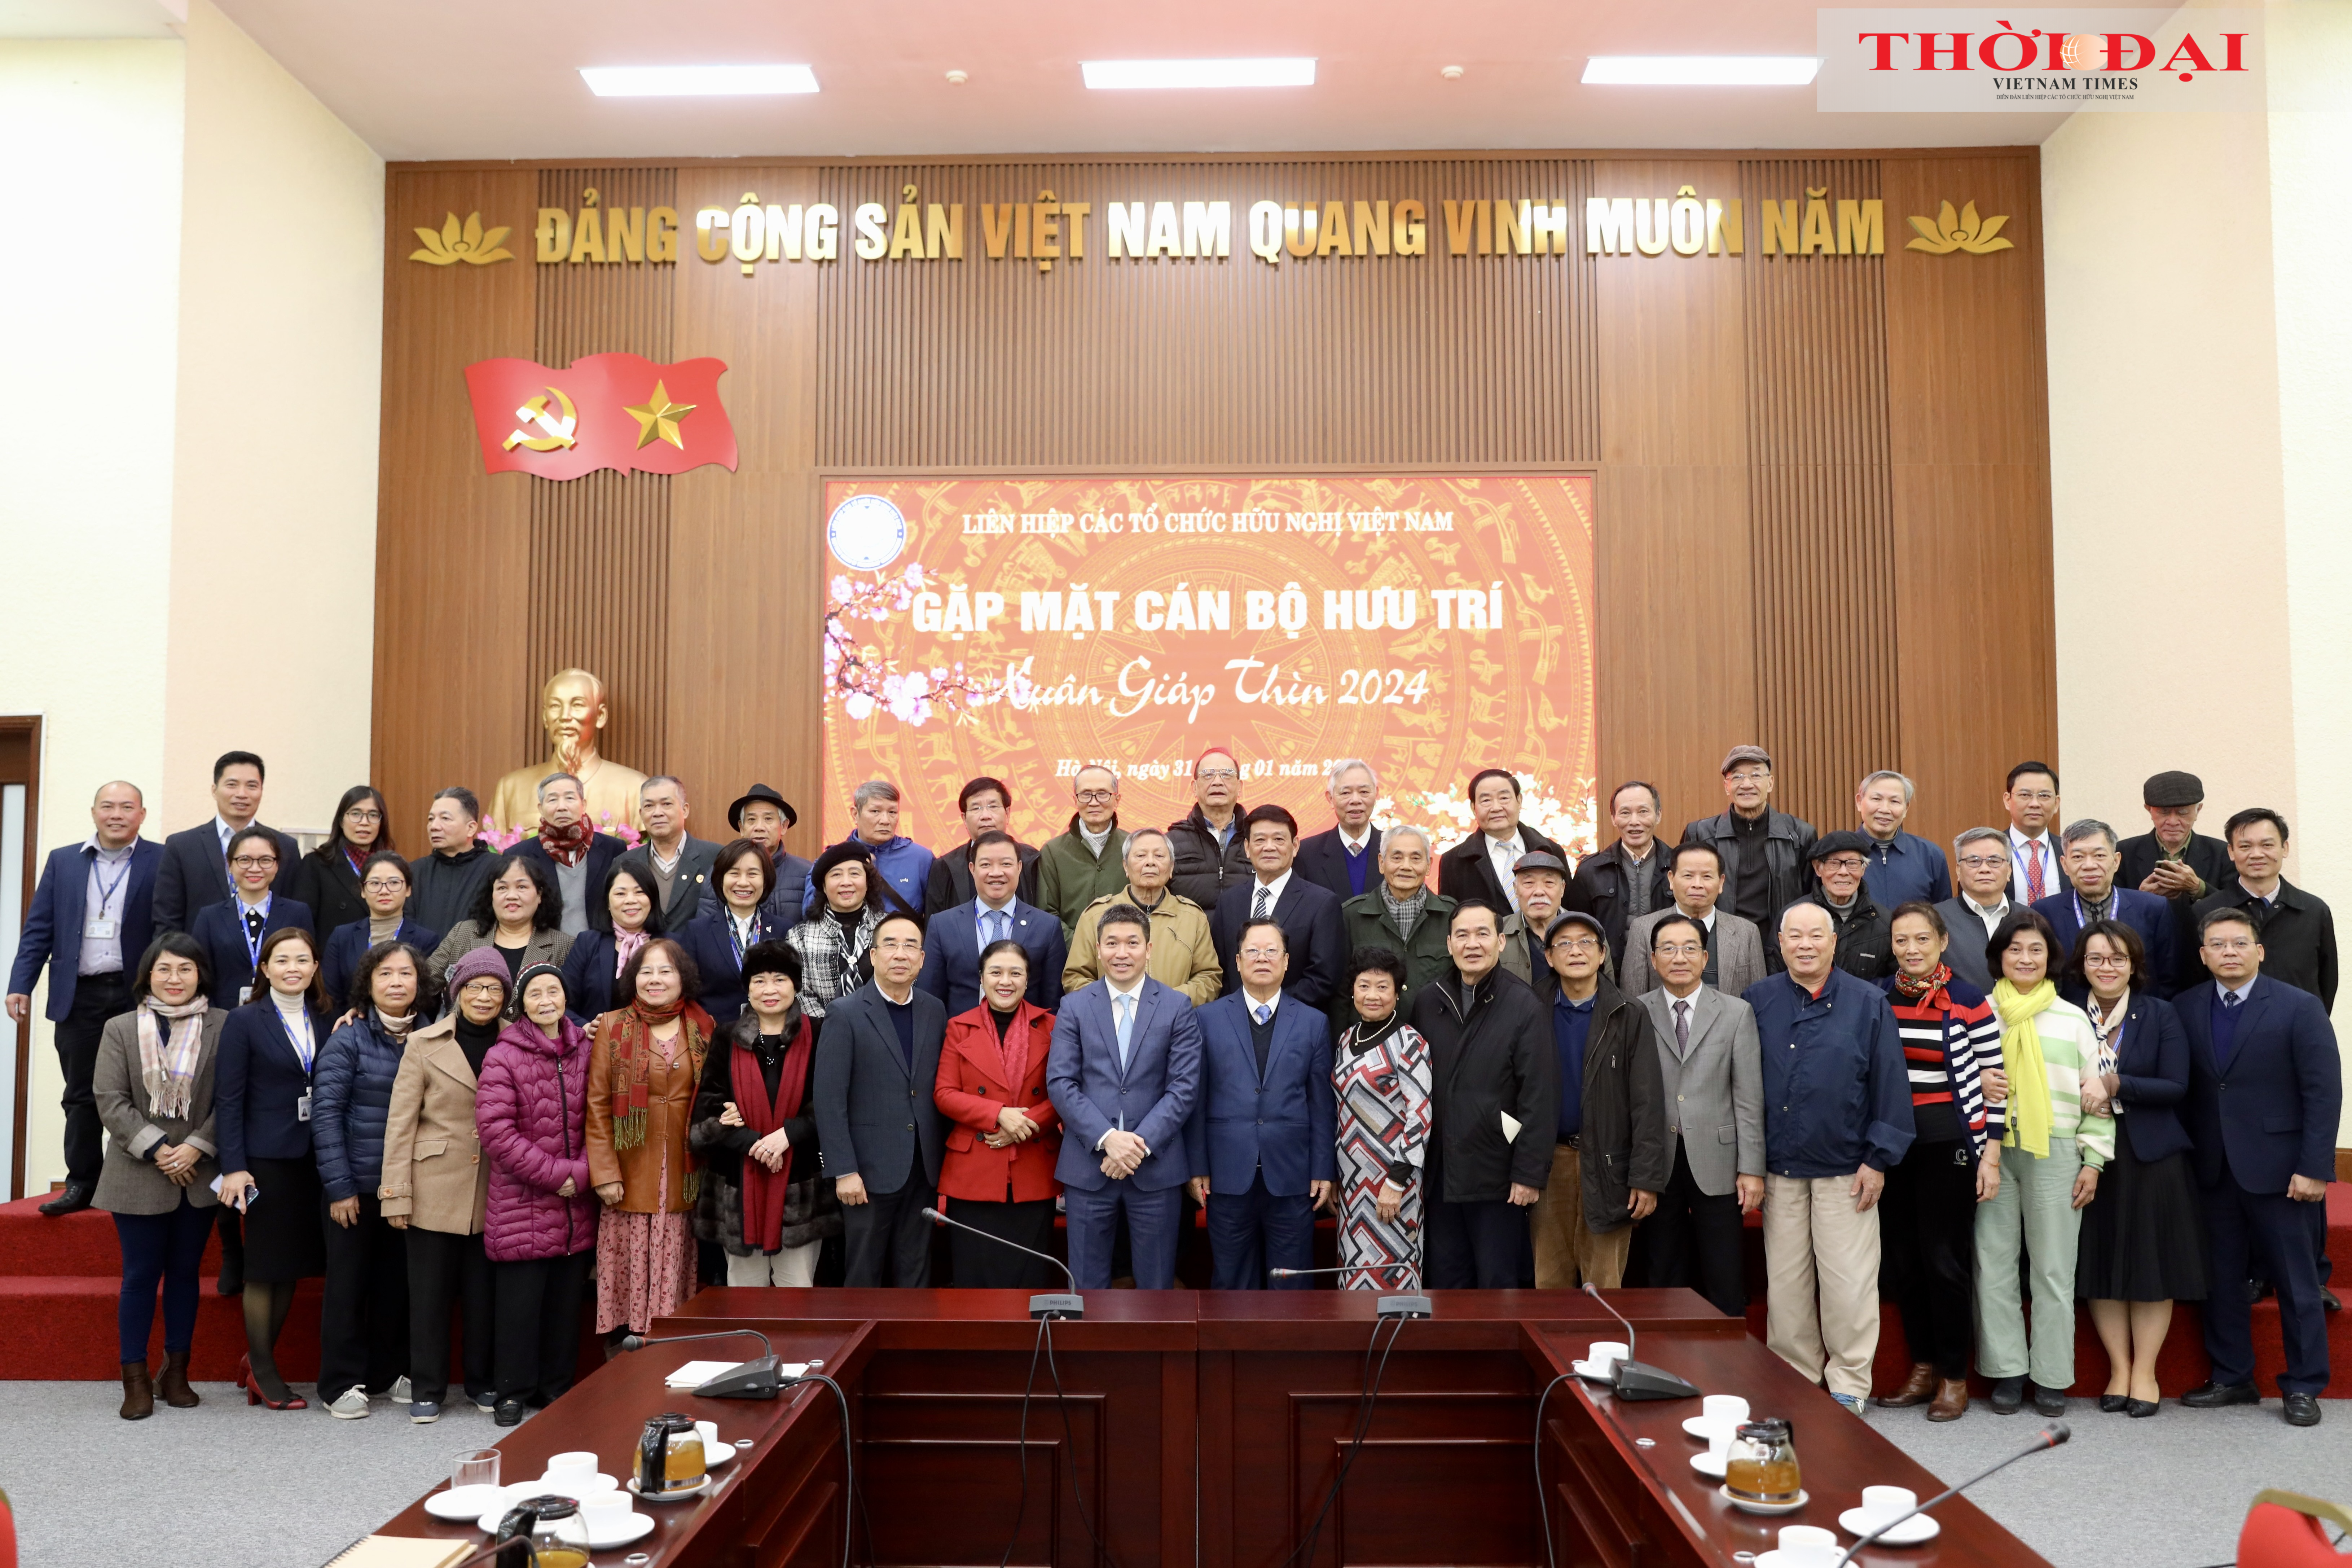 Liên hiệp các tổ chức hữu nghị Việt Nam tri ân cán bộ hưu trí